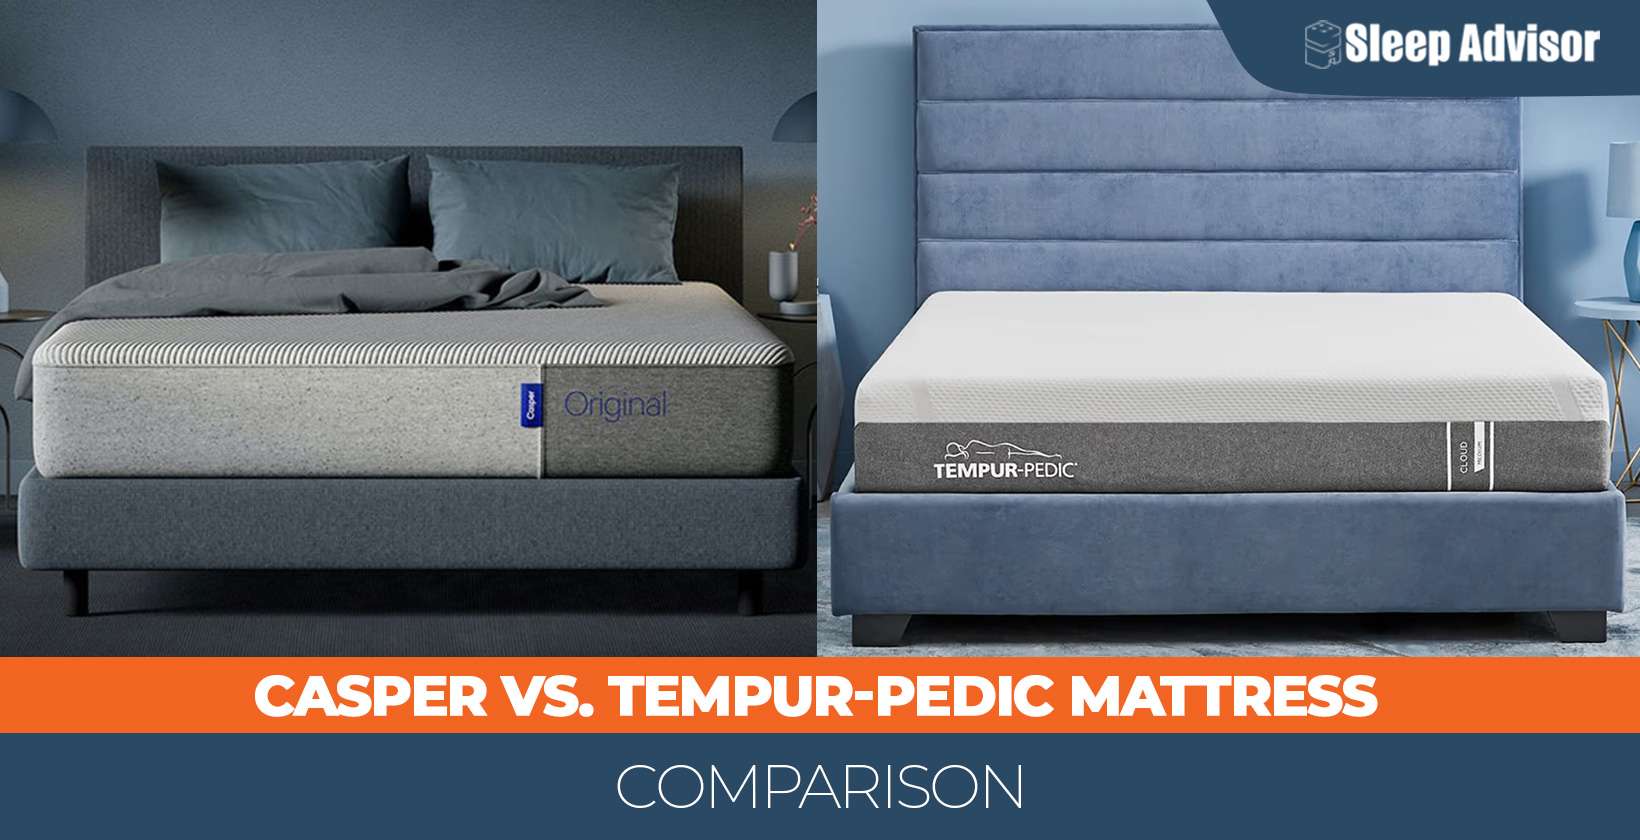 Casper versus Tempur-Pedic Compared mattresses